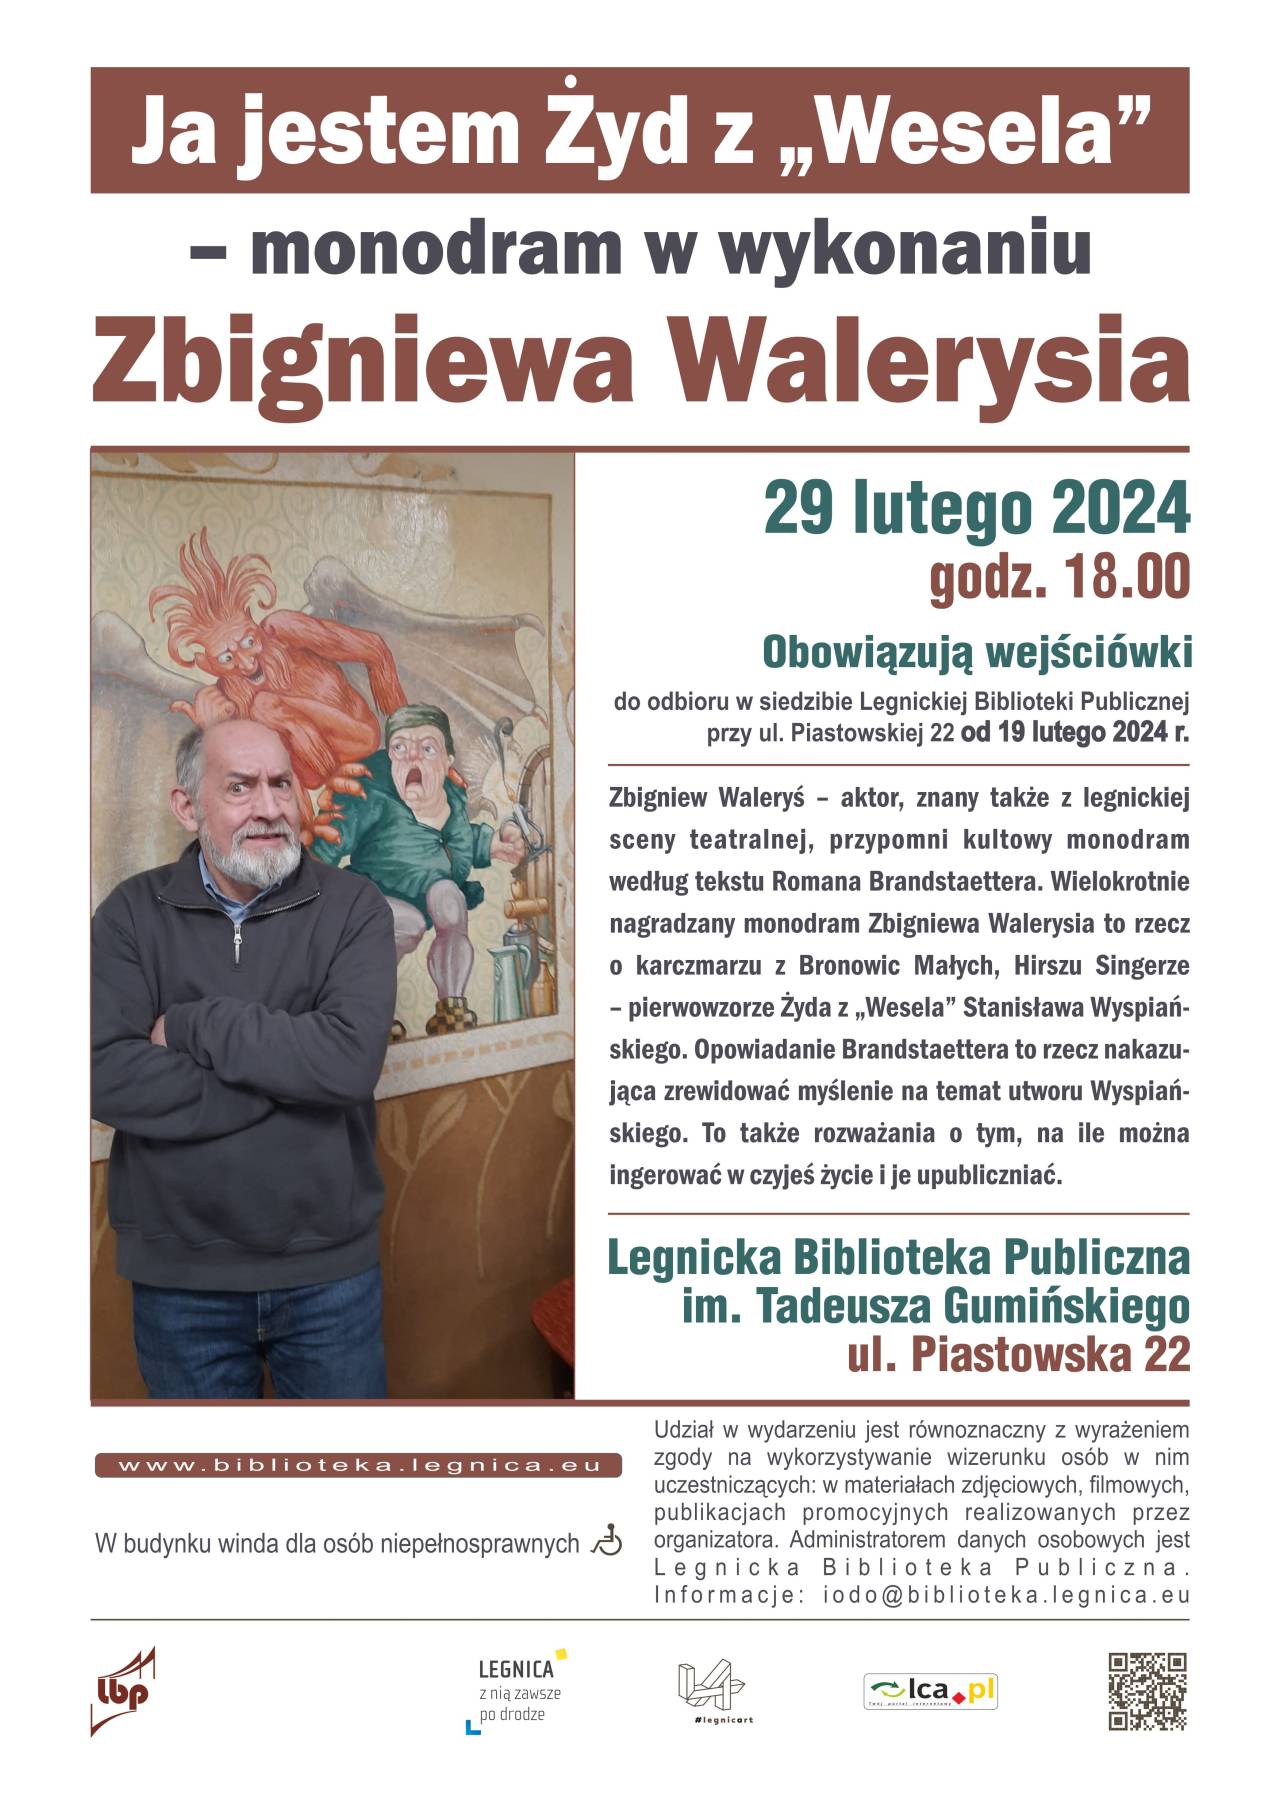 Spotkanie ze Zbigniewem Walerysiem